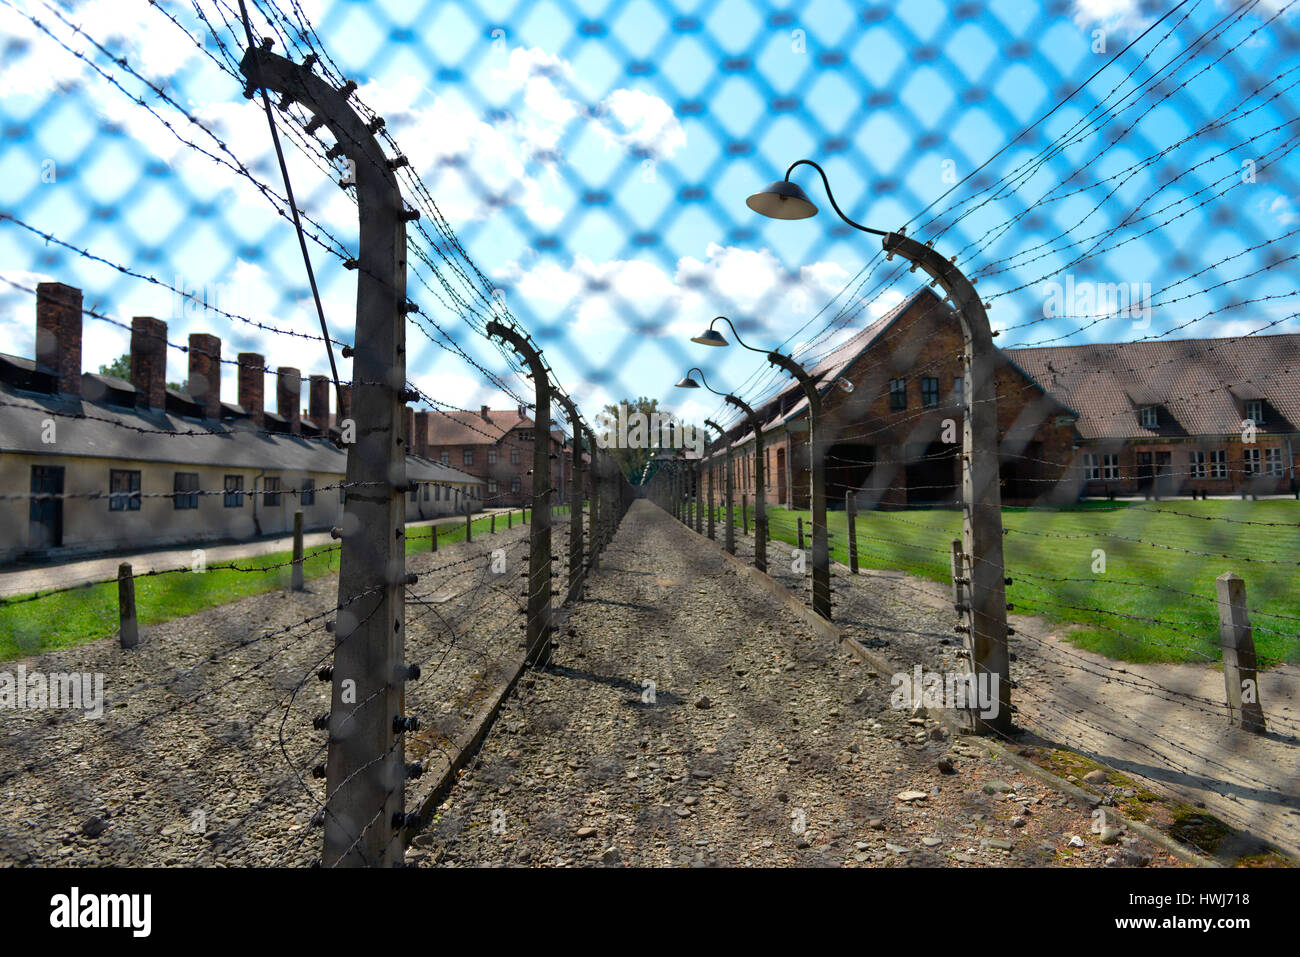 Stacheldraht, Lagergebaeude, Stammlager I, Konzentrationslager, Auschwitz-Birkenau, Auschwitz, Polen Stock Photo